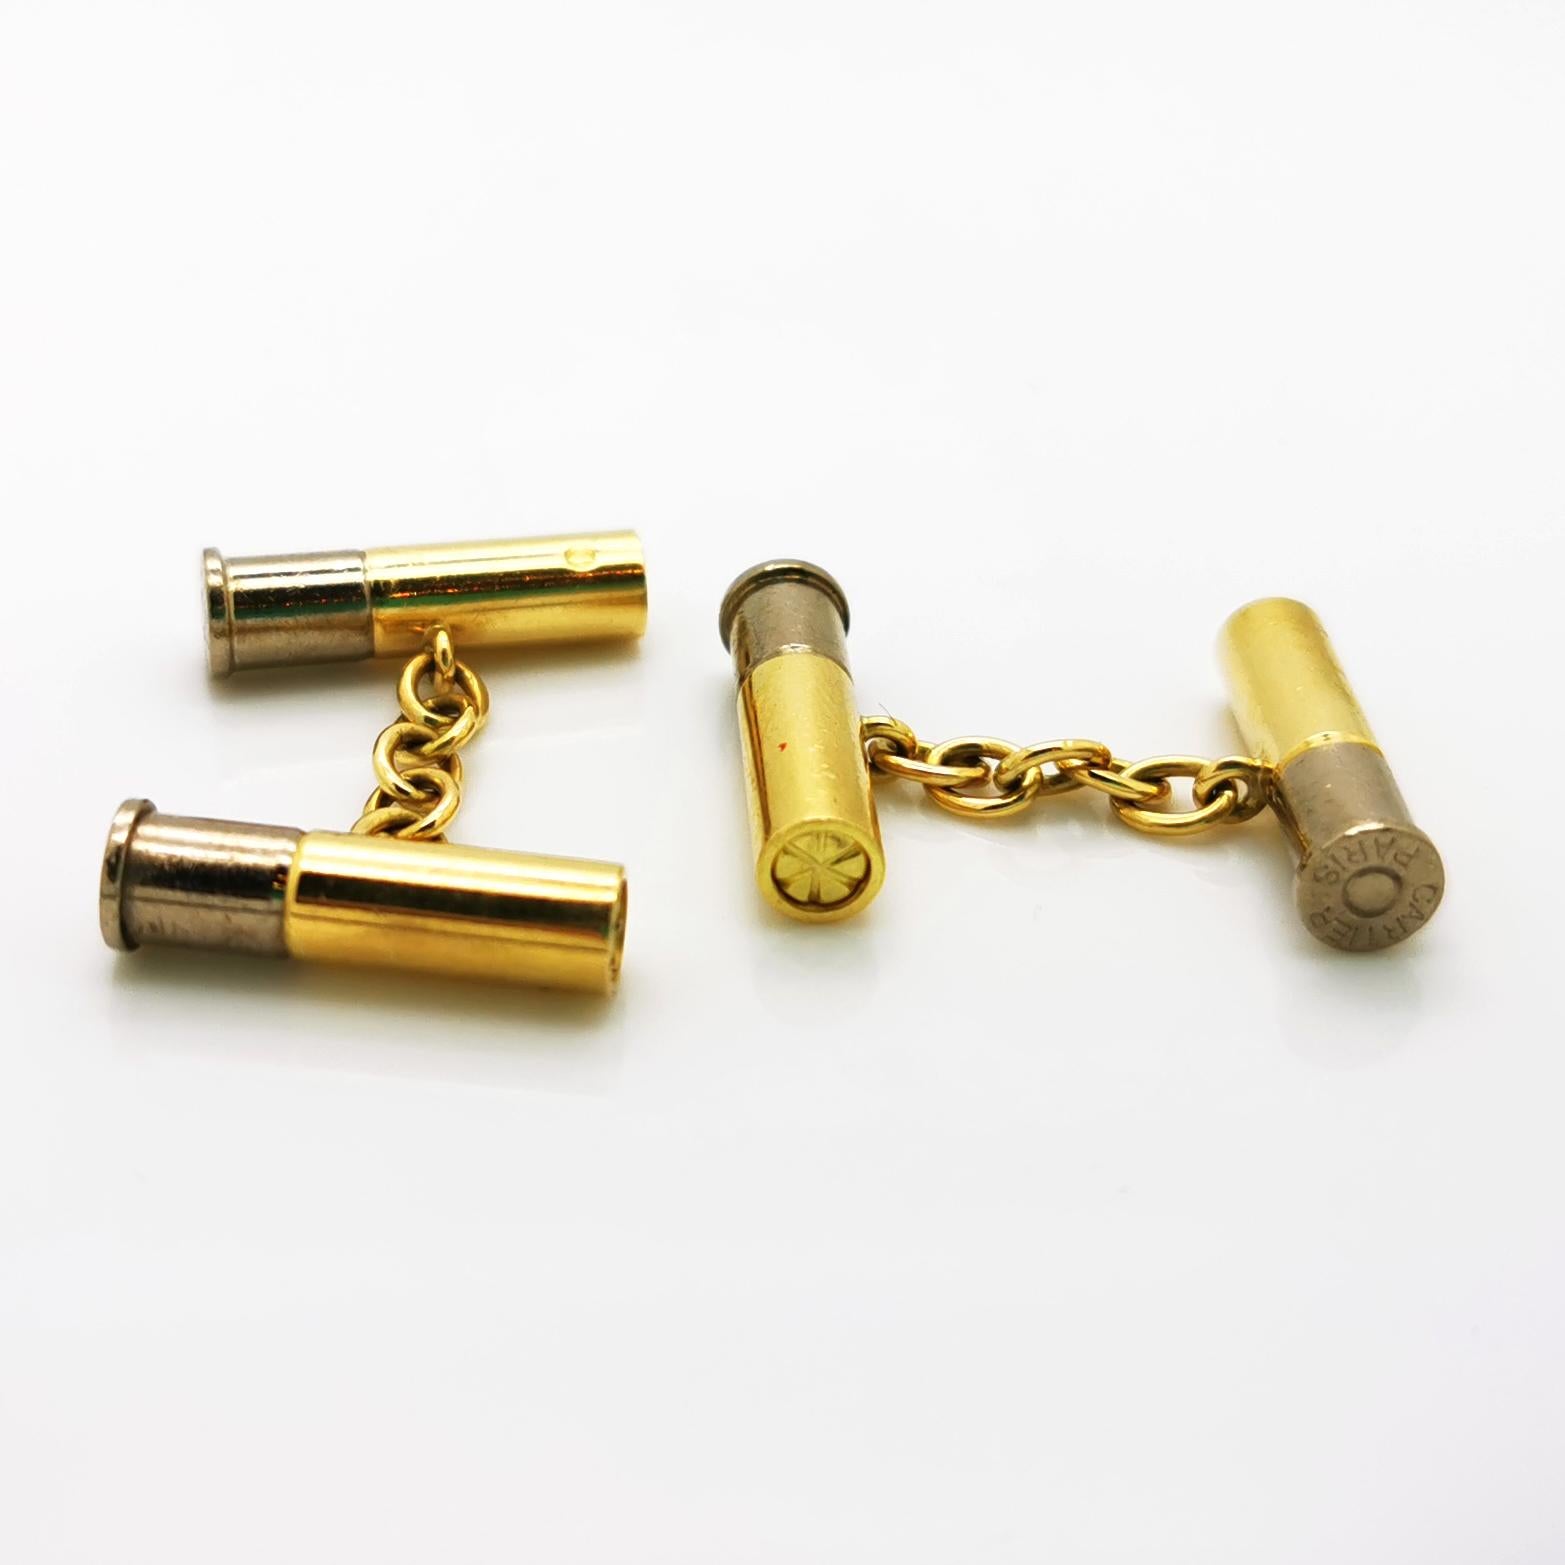 gb shotgun cartridges